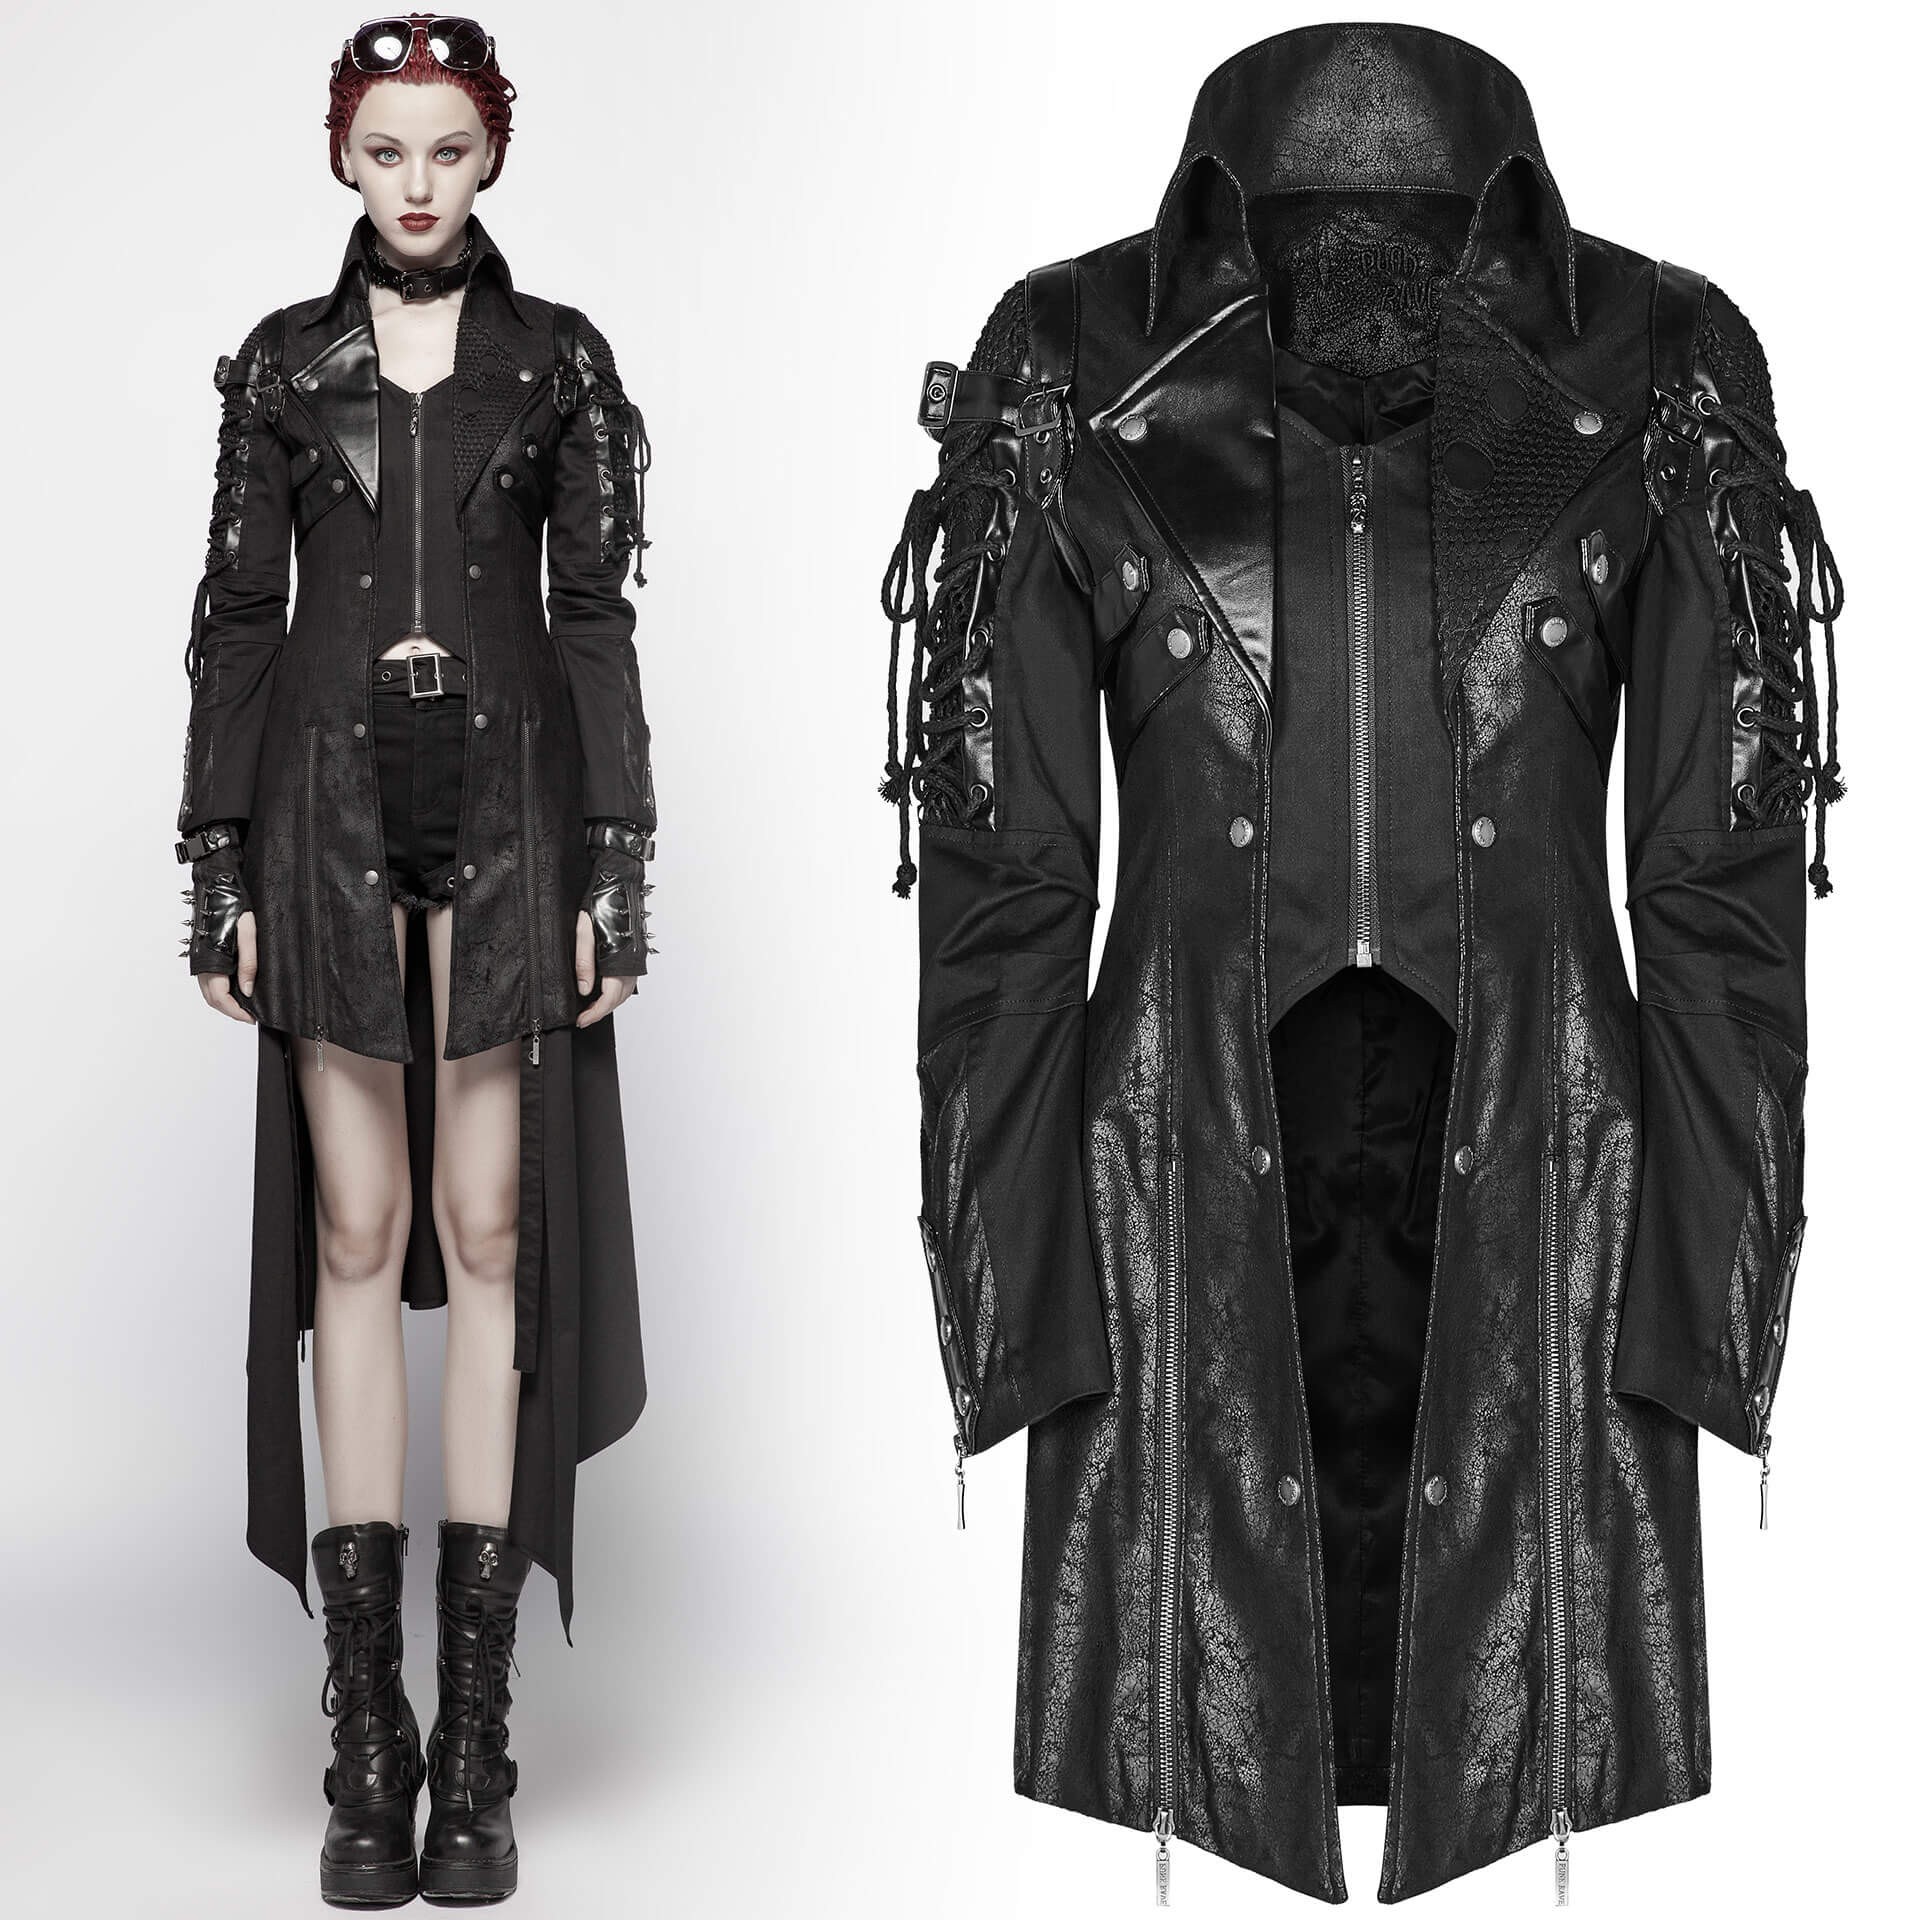 Poisonblack - Gothic style women's jacket by Punk Rave - Gothic-Zone